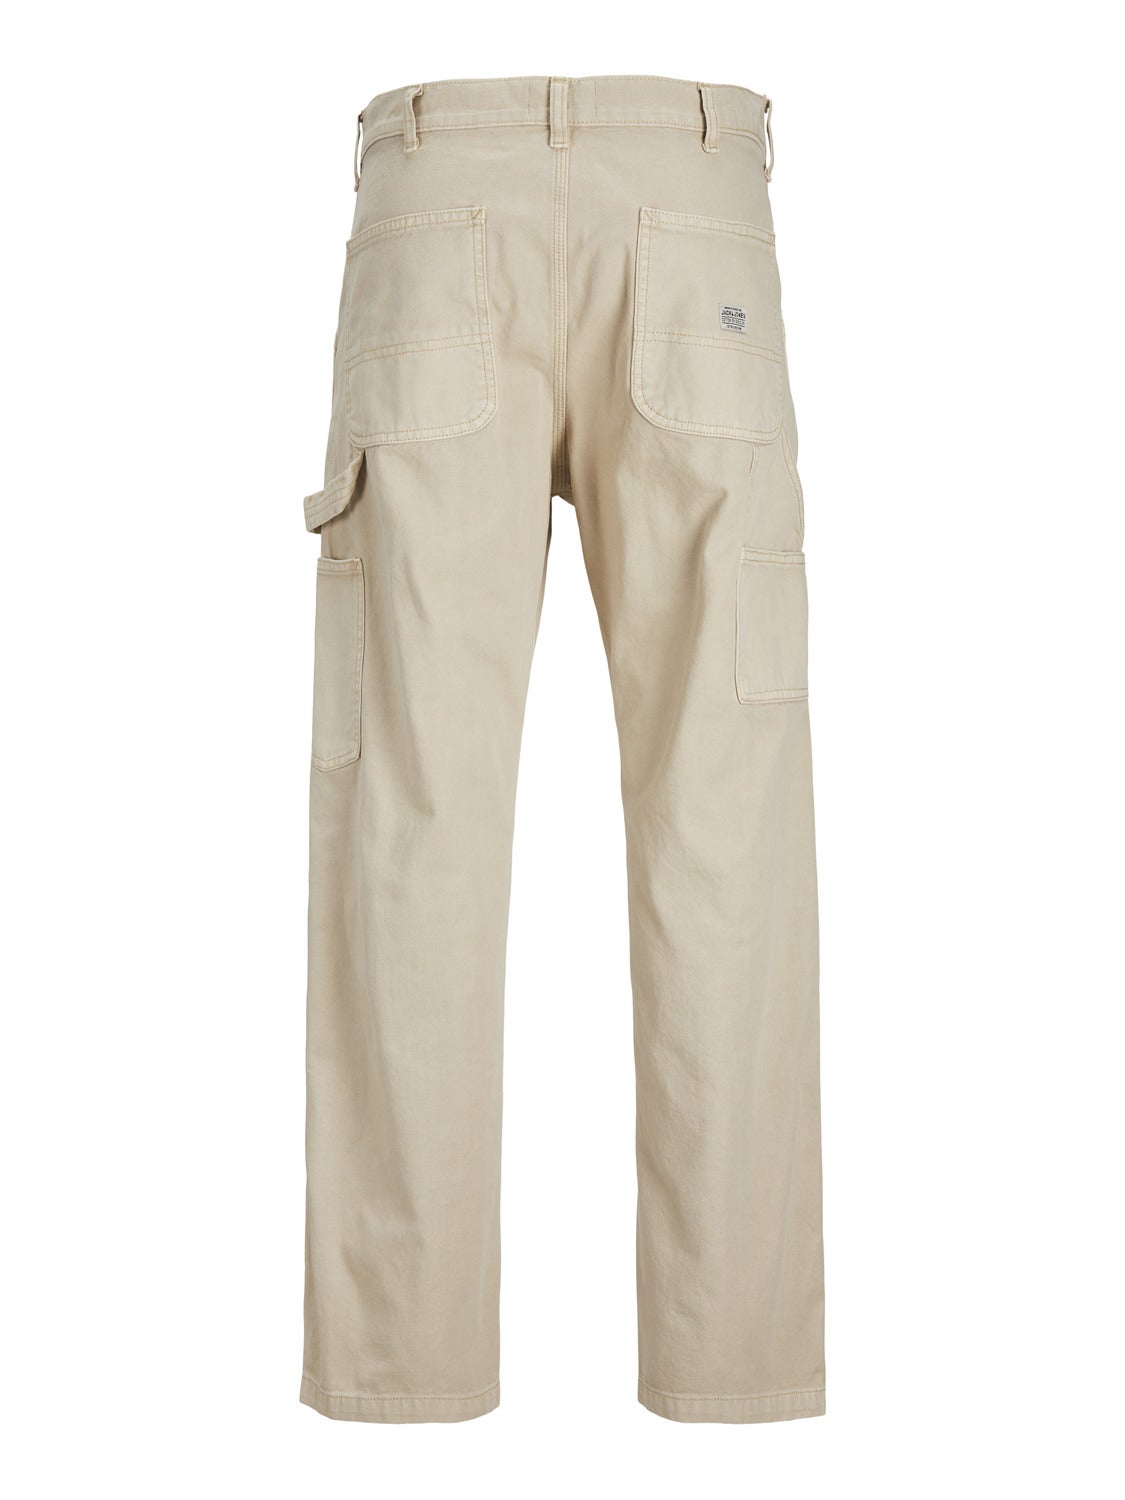 Buy Men Grey Solid Comfort Fit Trousers Online - 209500 | Van Heusen